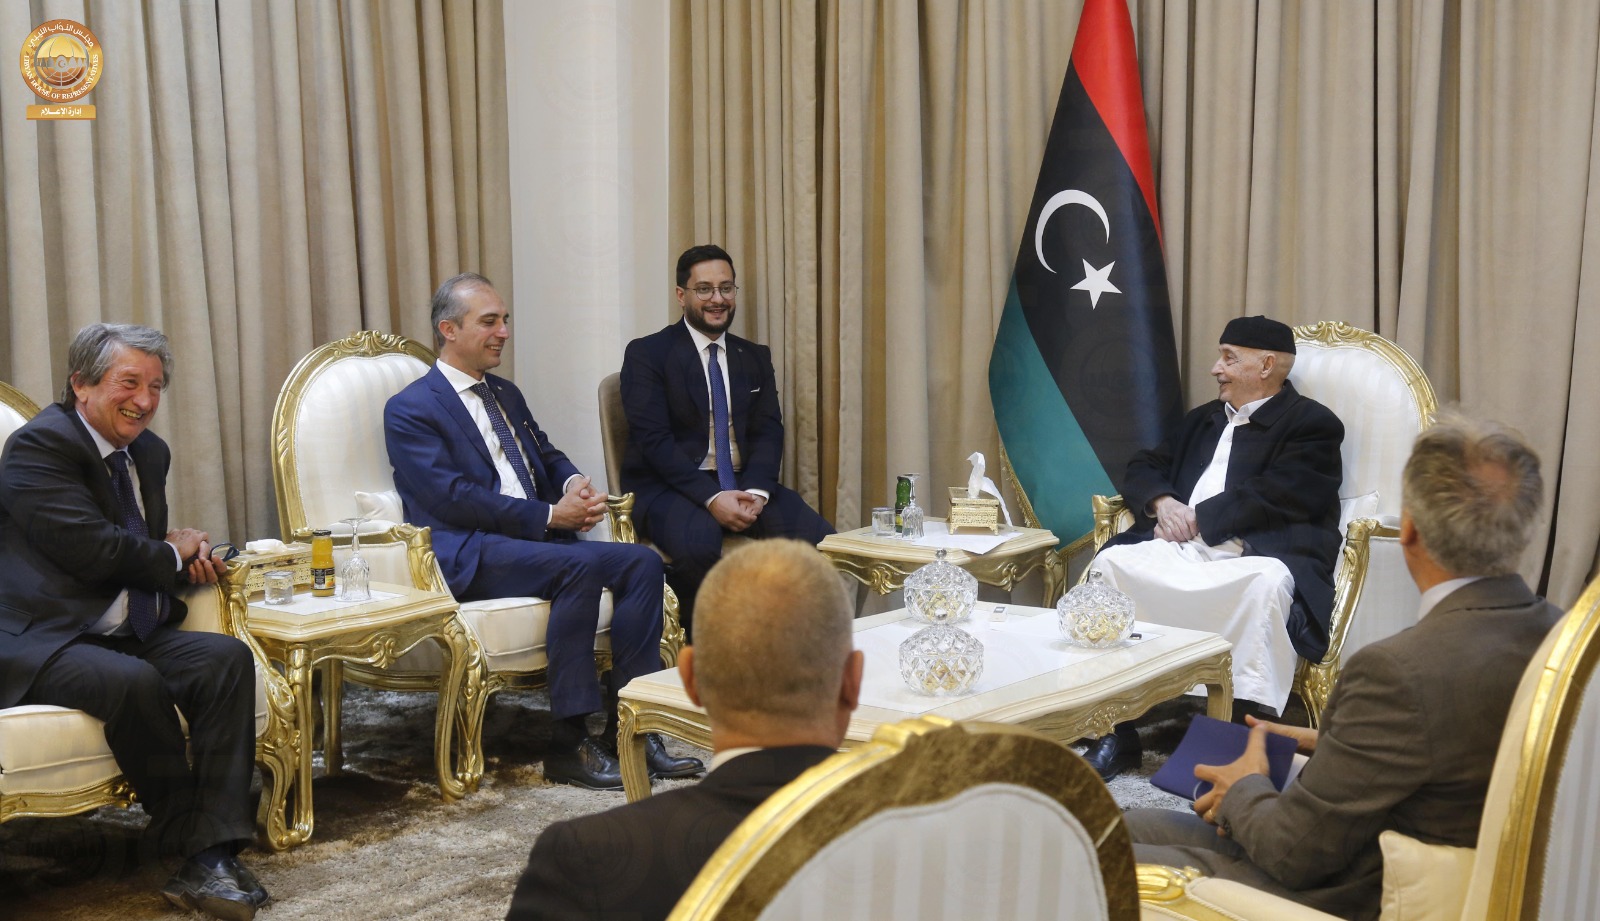 خلال لقائه سفير إيطاليا : رئيس مجلس النواب يدعوا الشركات الإيطالية للعودة الى ليبيا والمساهمة في مشاريع الإعمار .